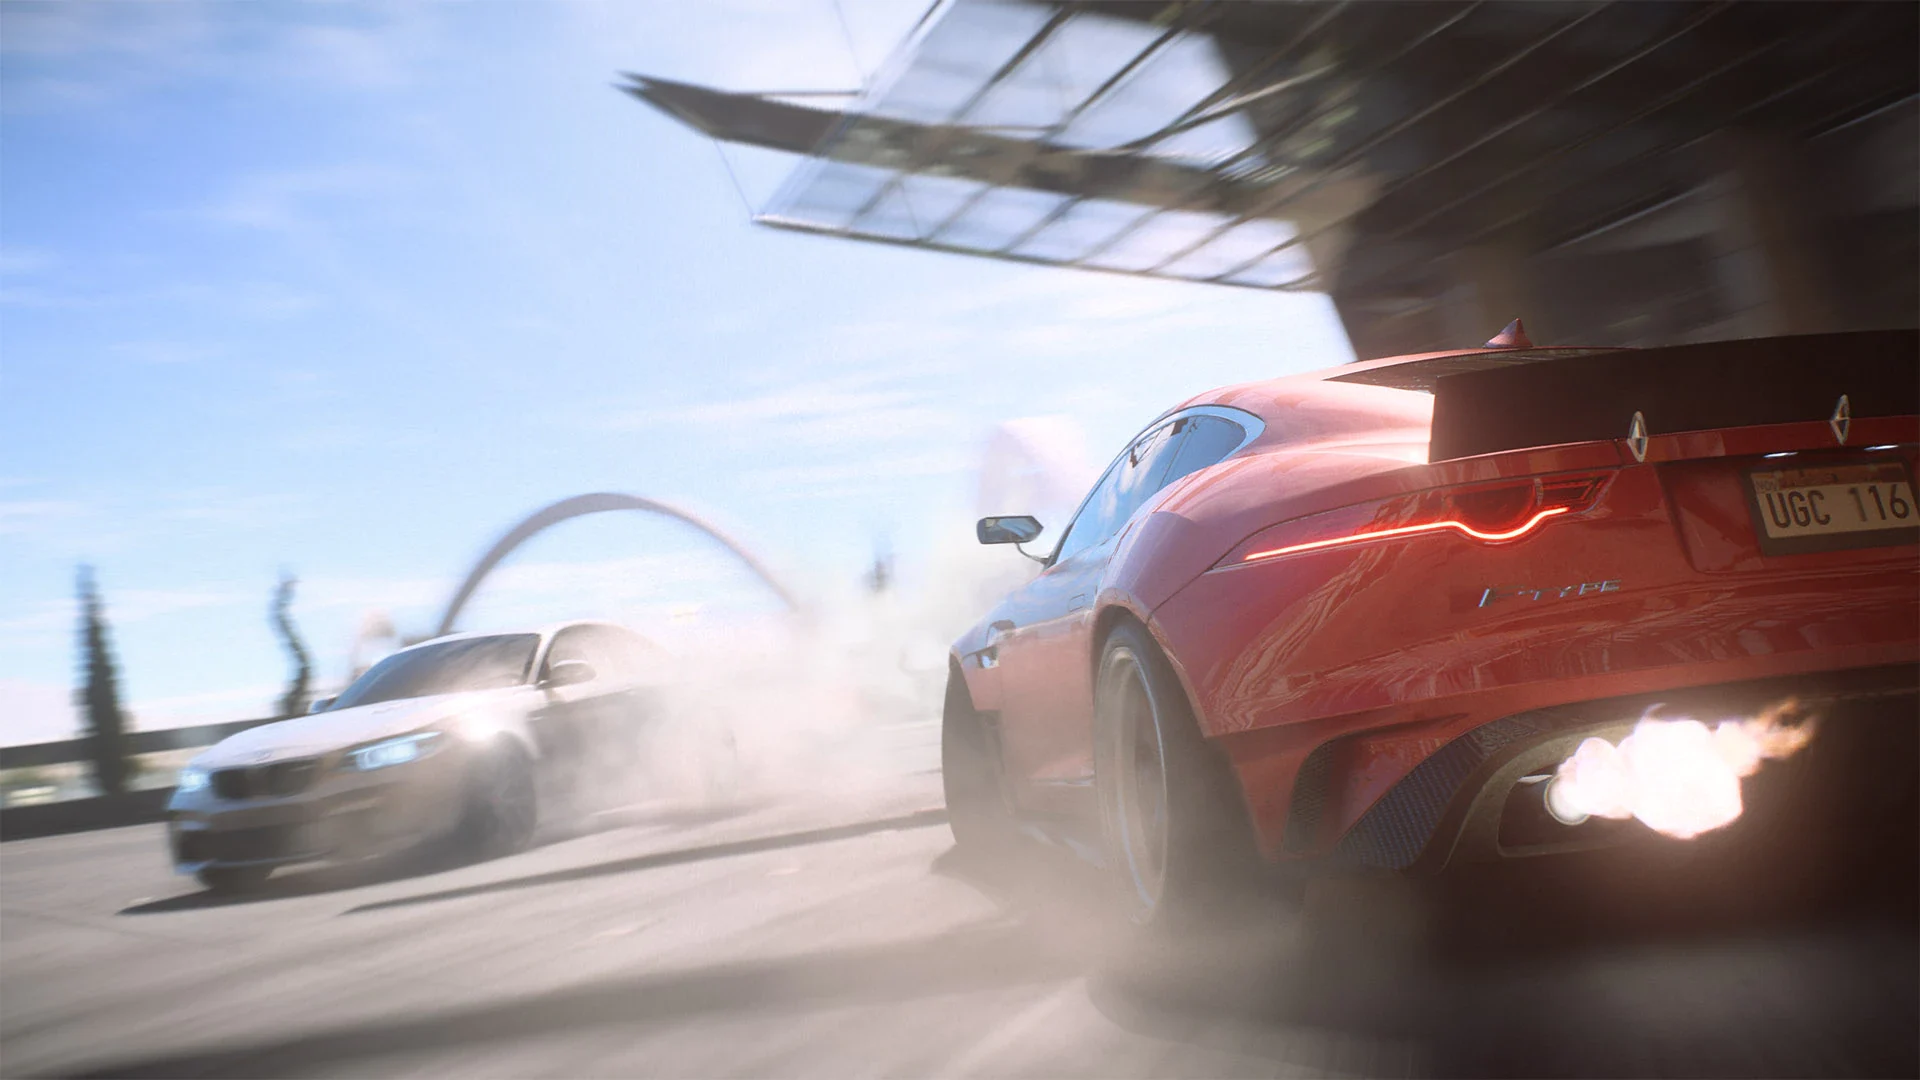  اکانت قانونی Need for Speed برای PS4 & PS5 